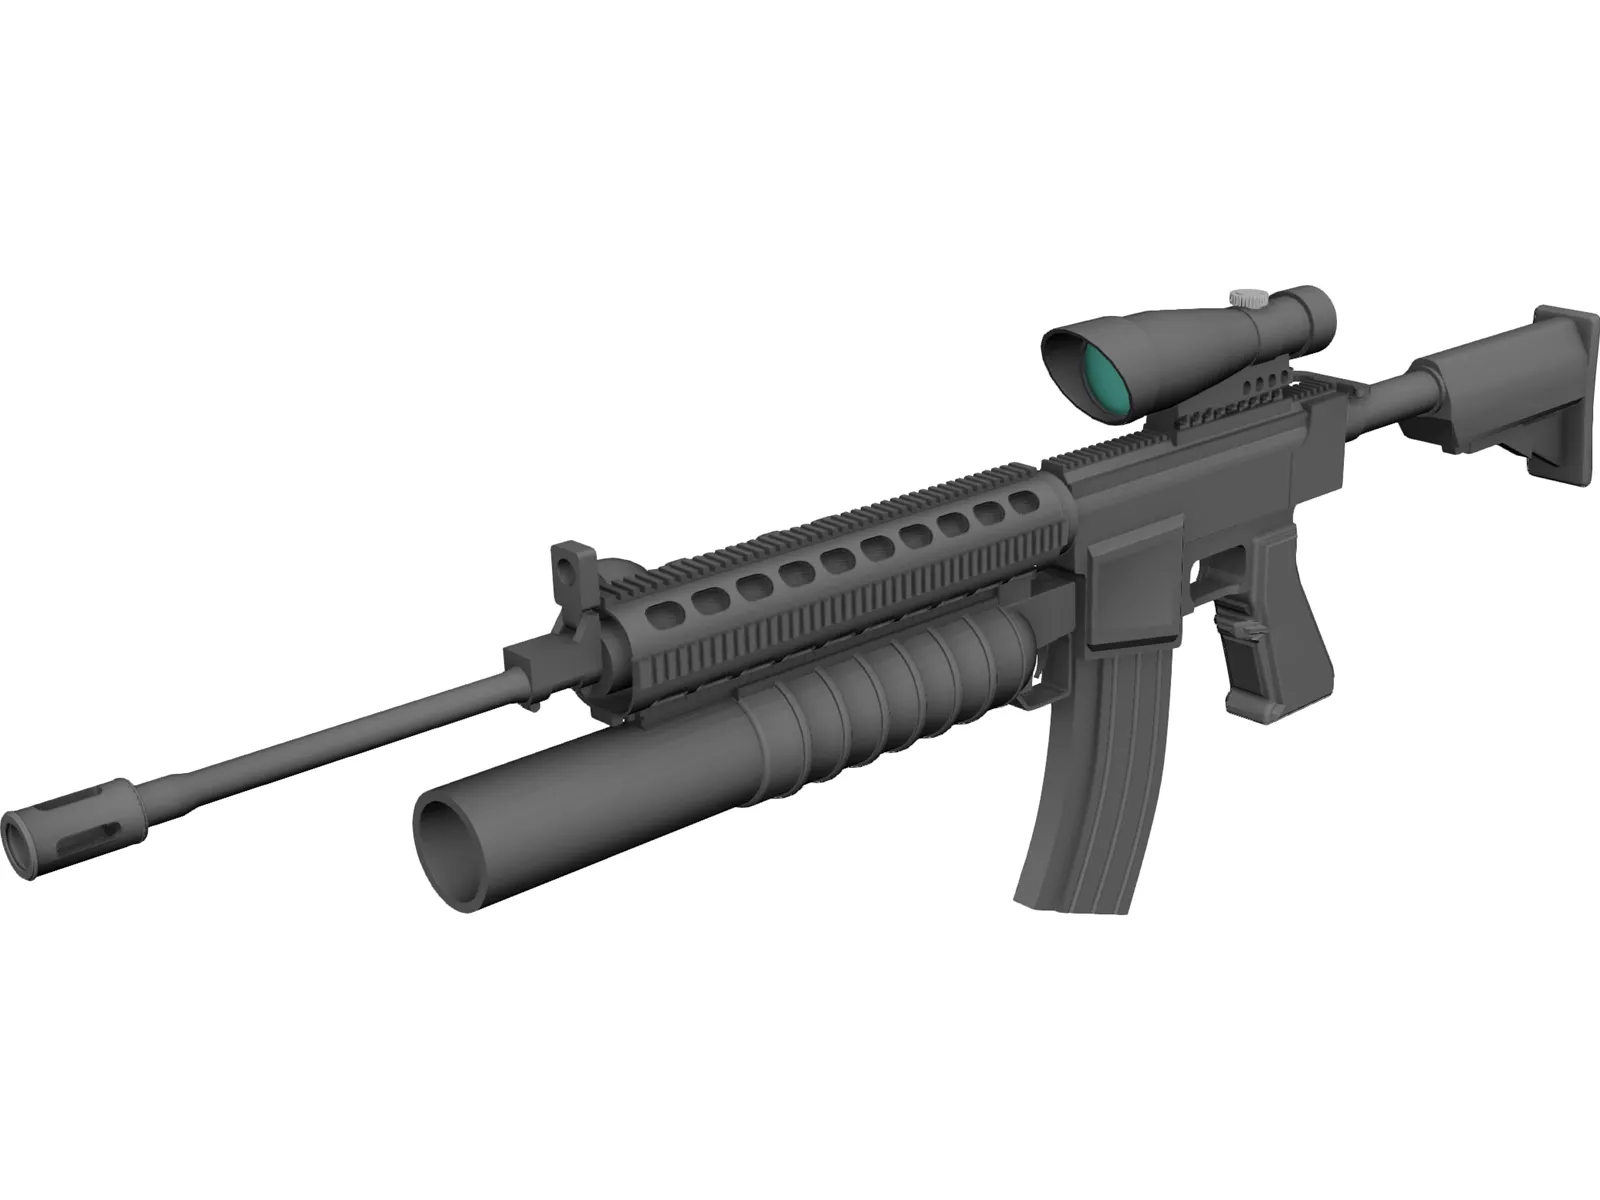 M16 Grenade Launcher 3D Model